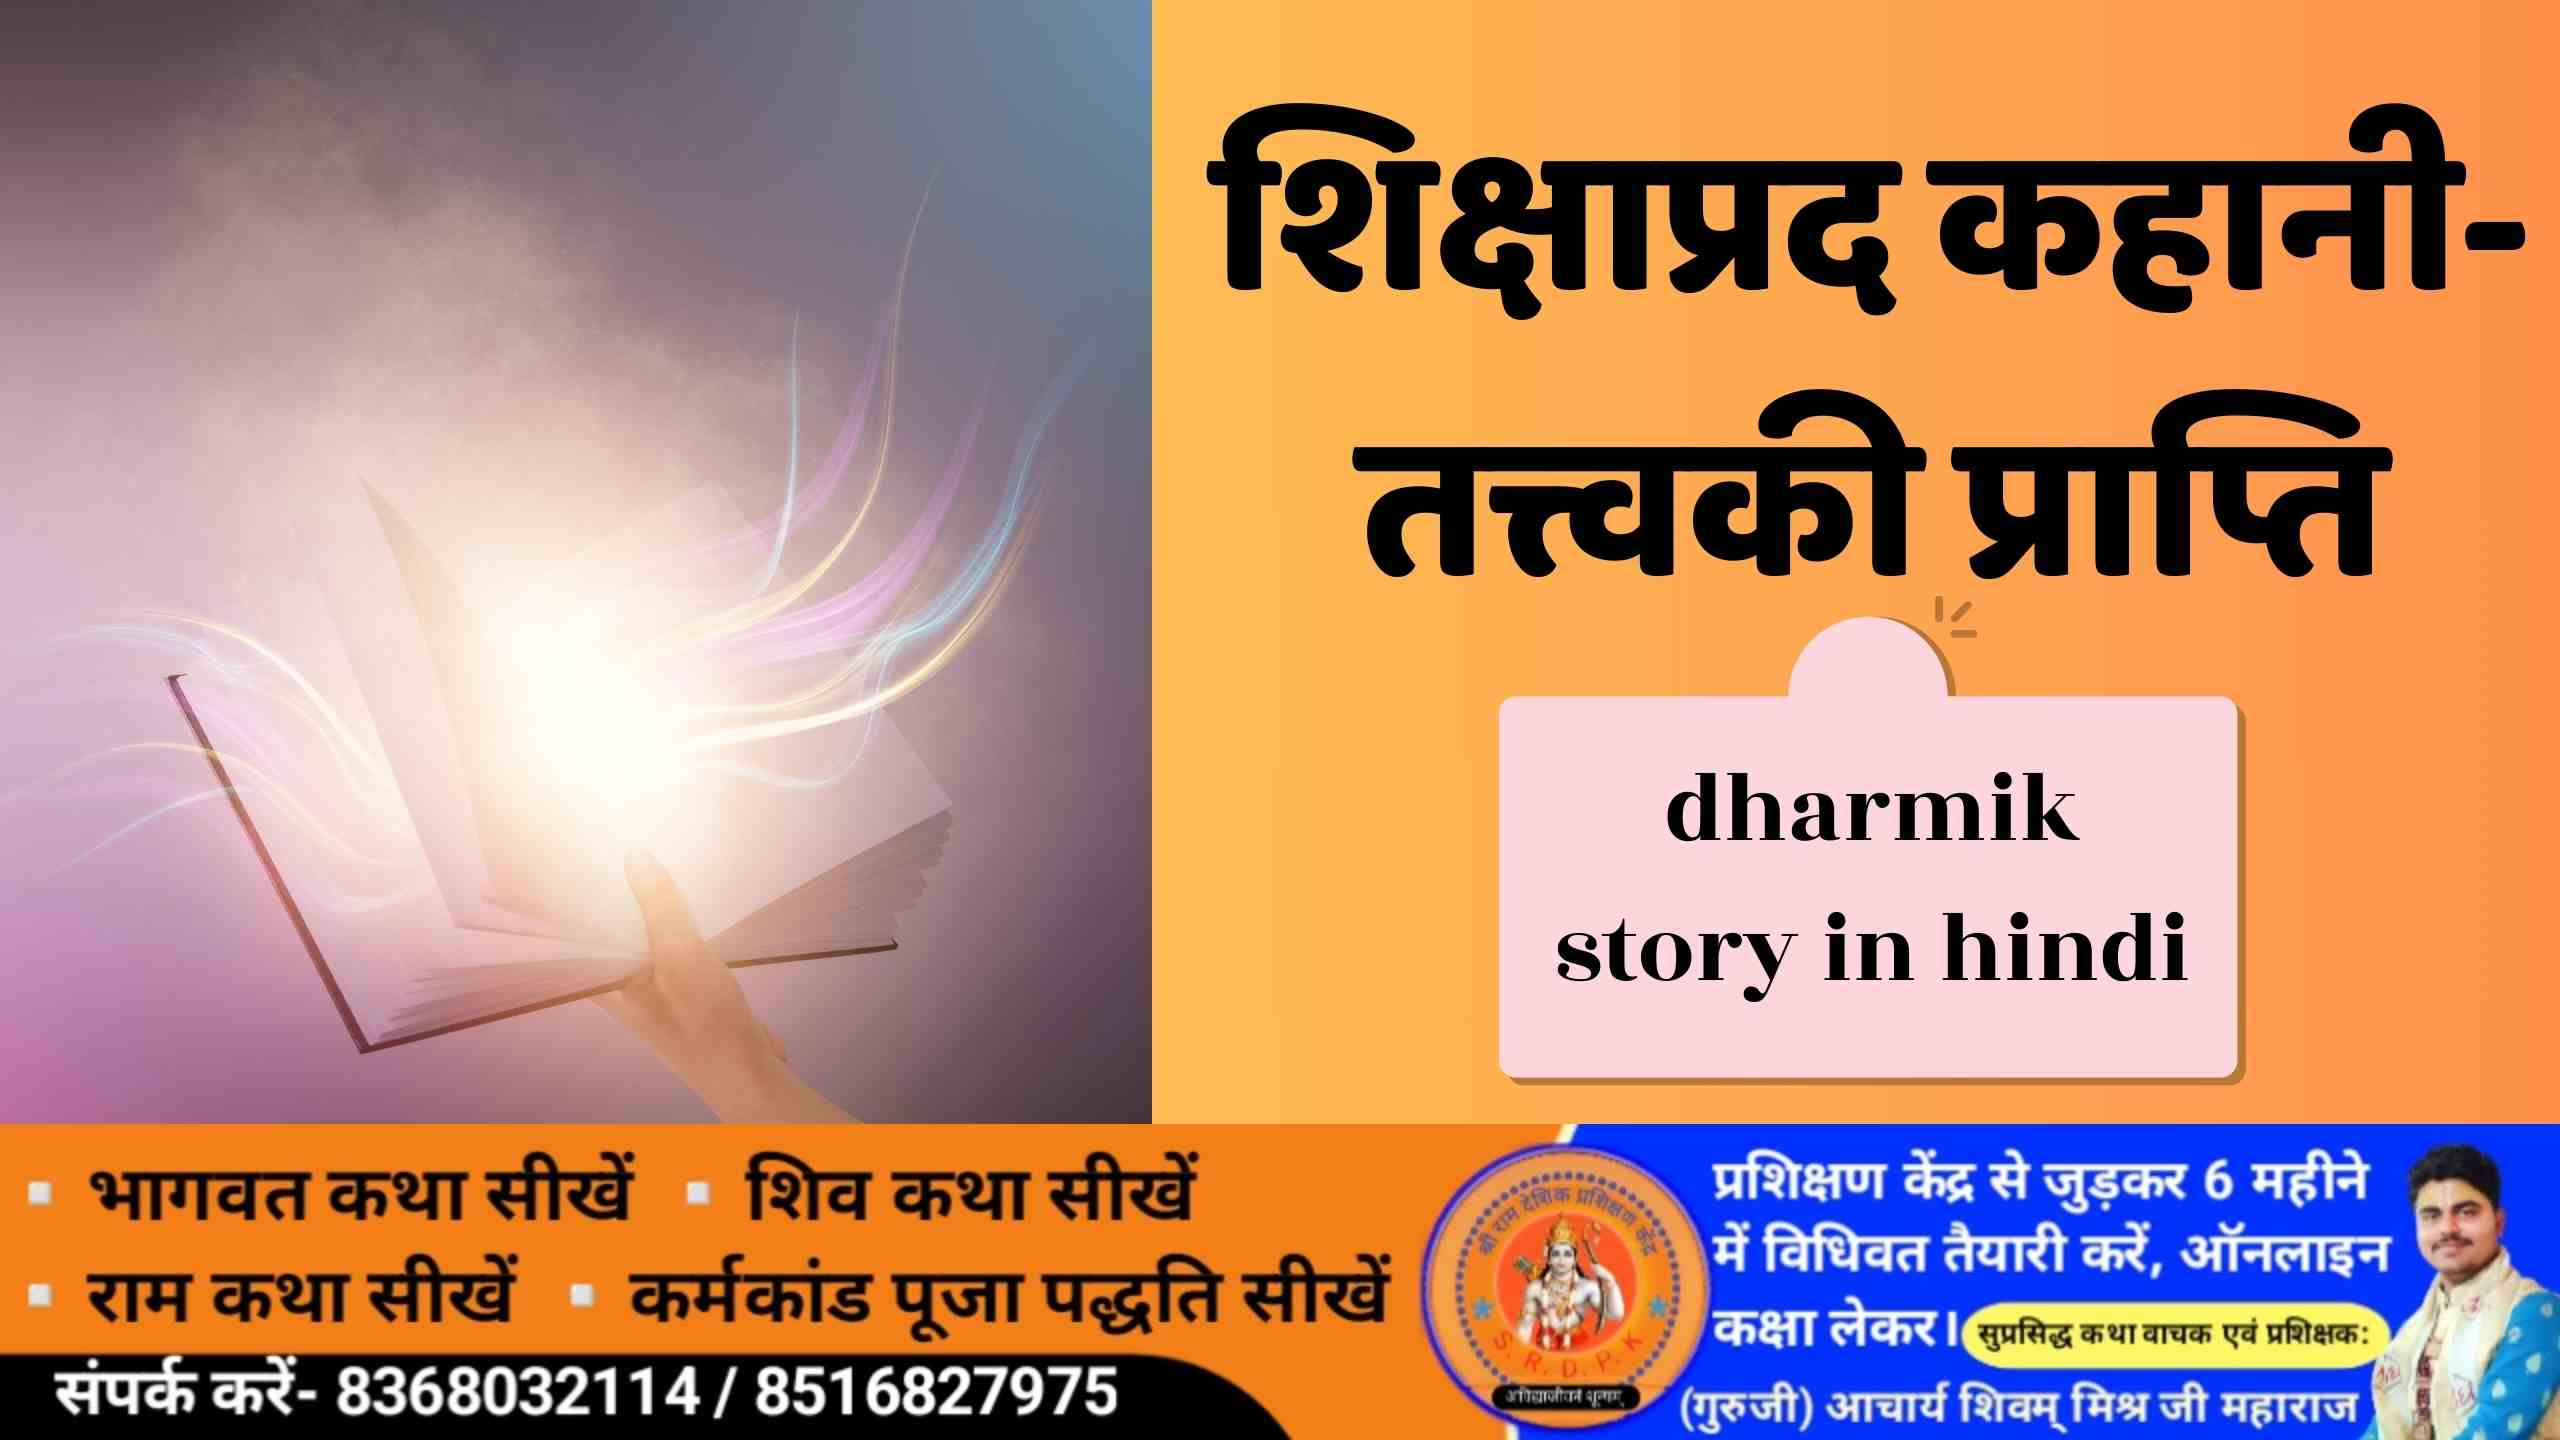 शिक्षाप्रद कहानी- तत्त्वकी प्राप्ति dharmik story in hindi